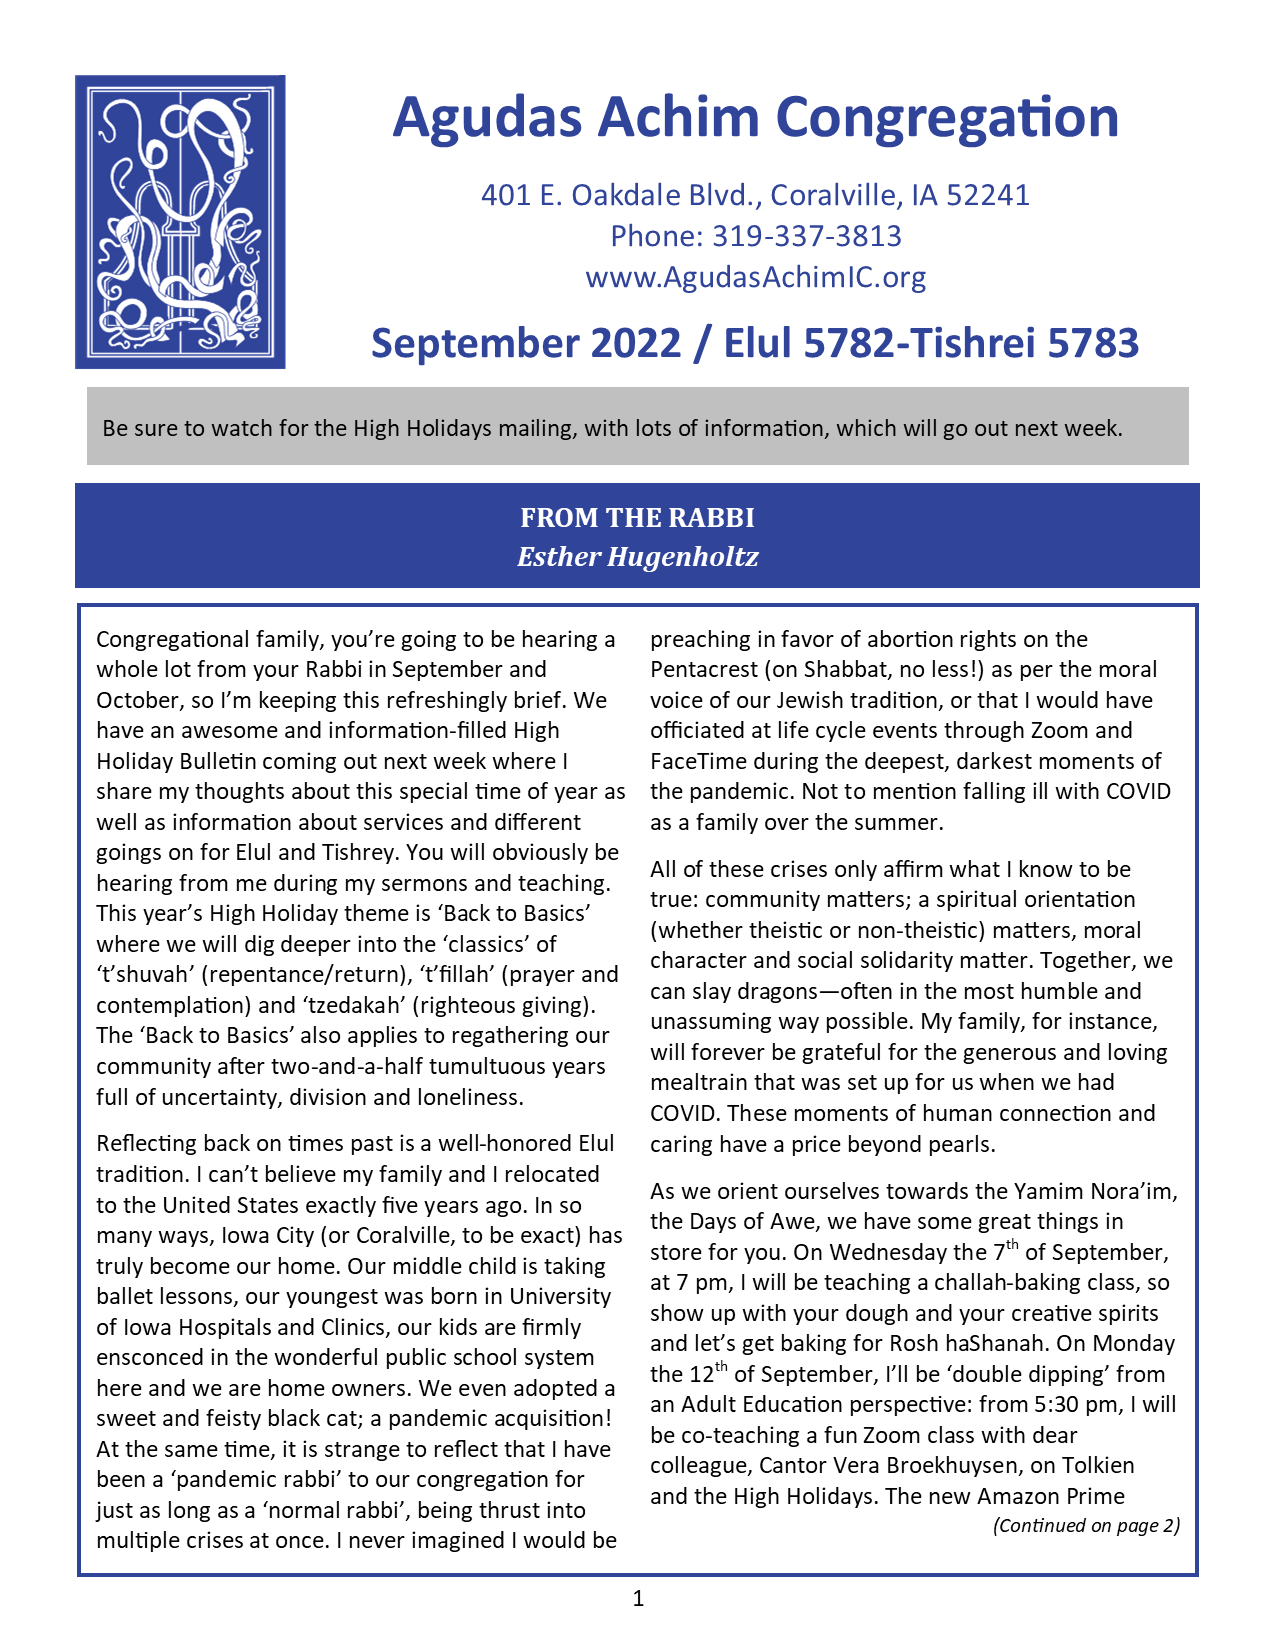 September 2022 Bulletin